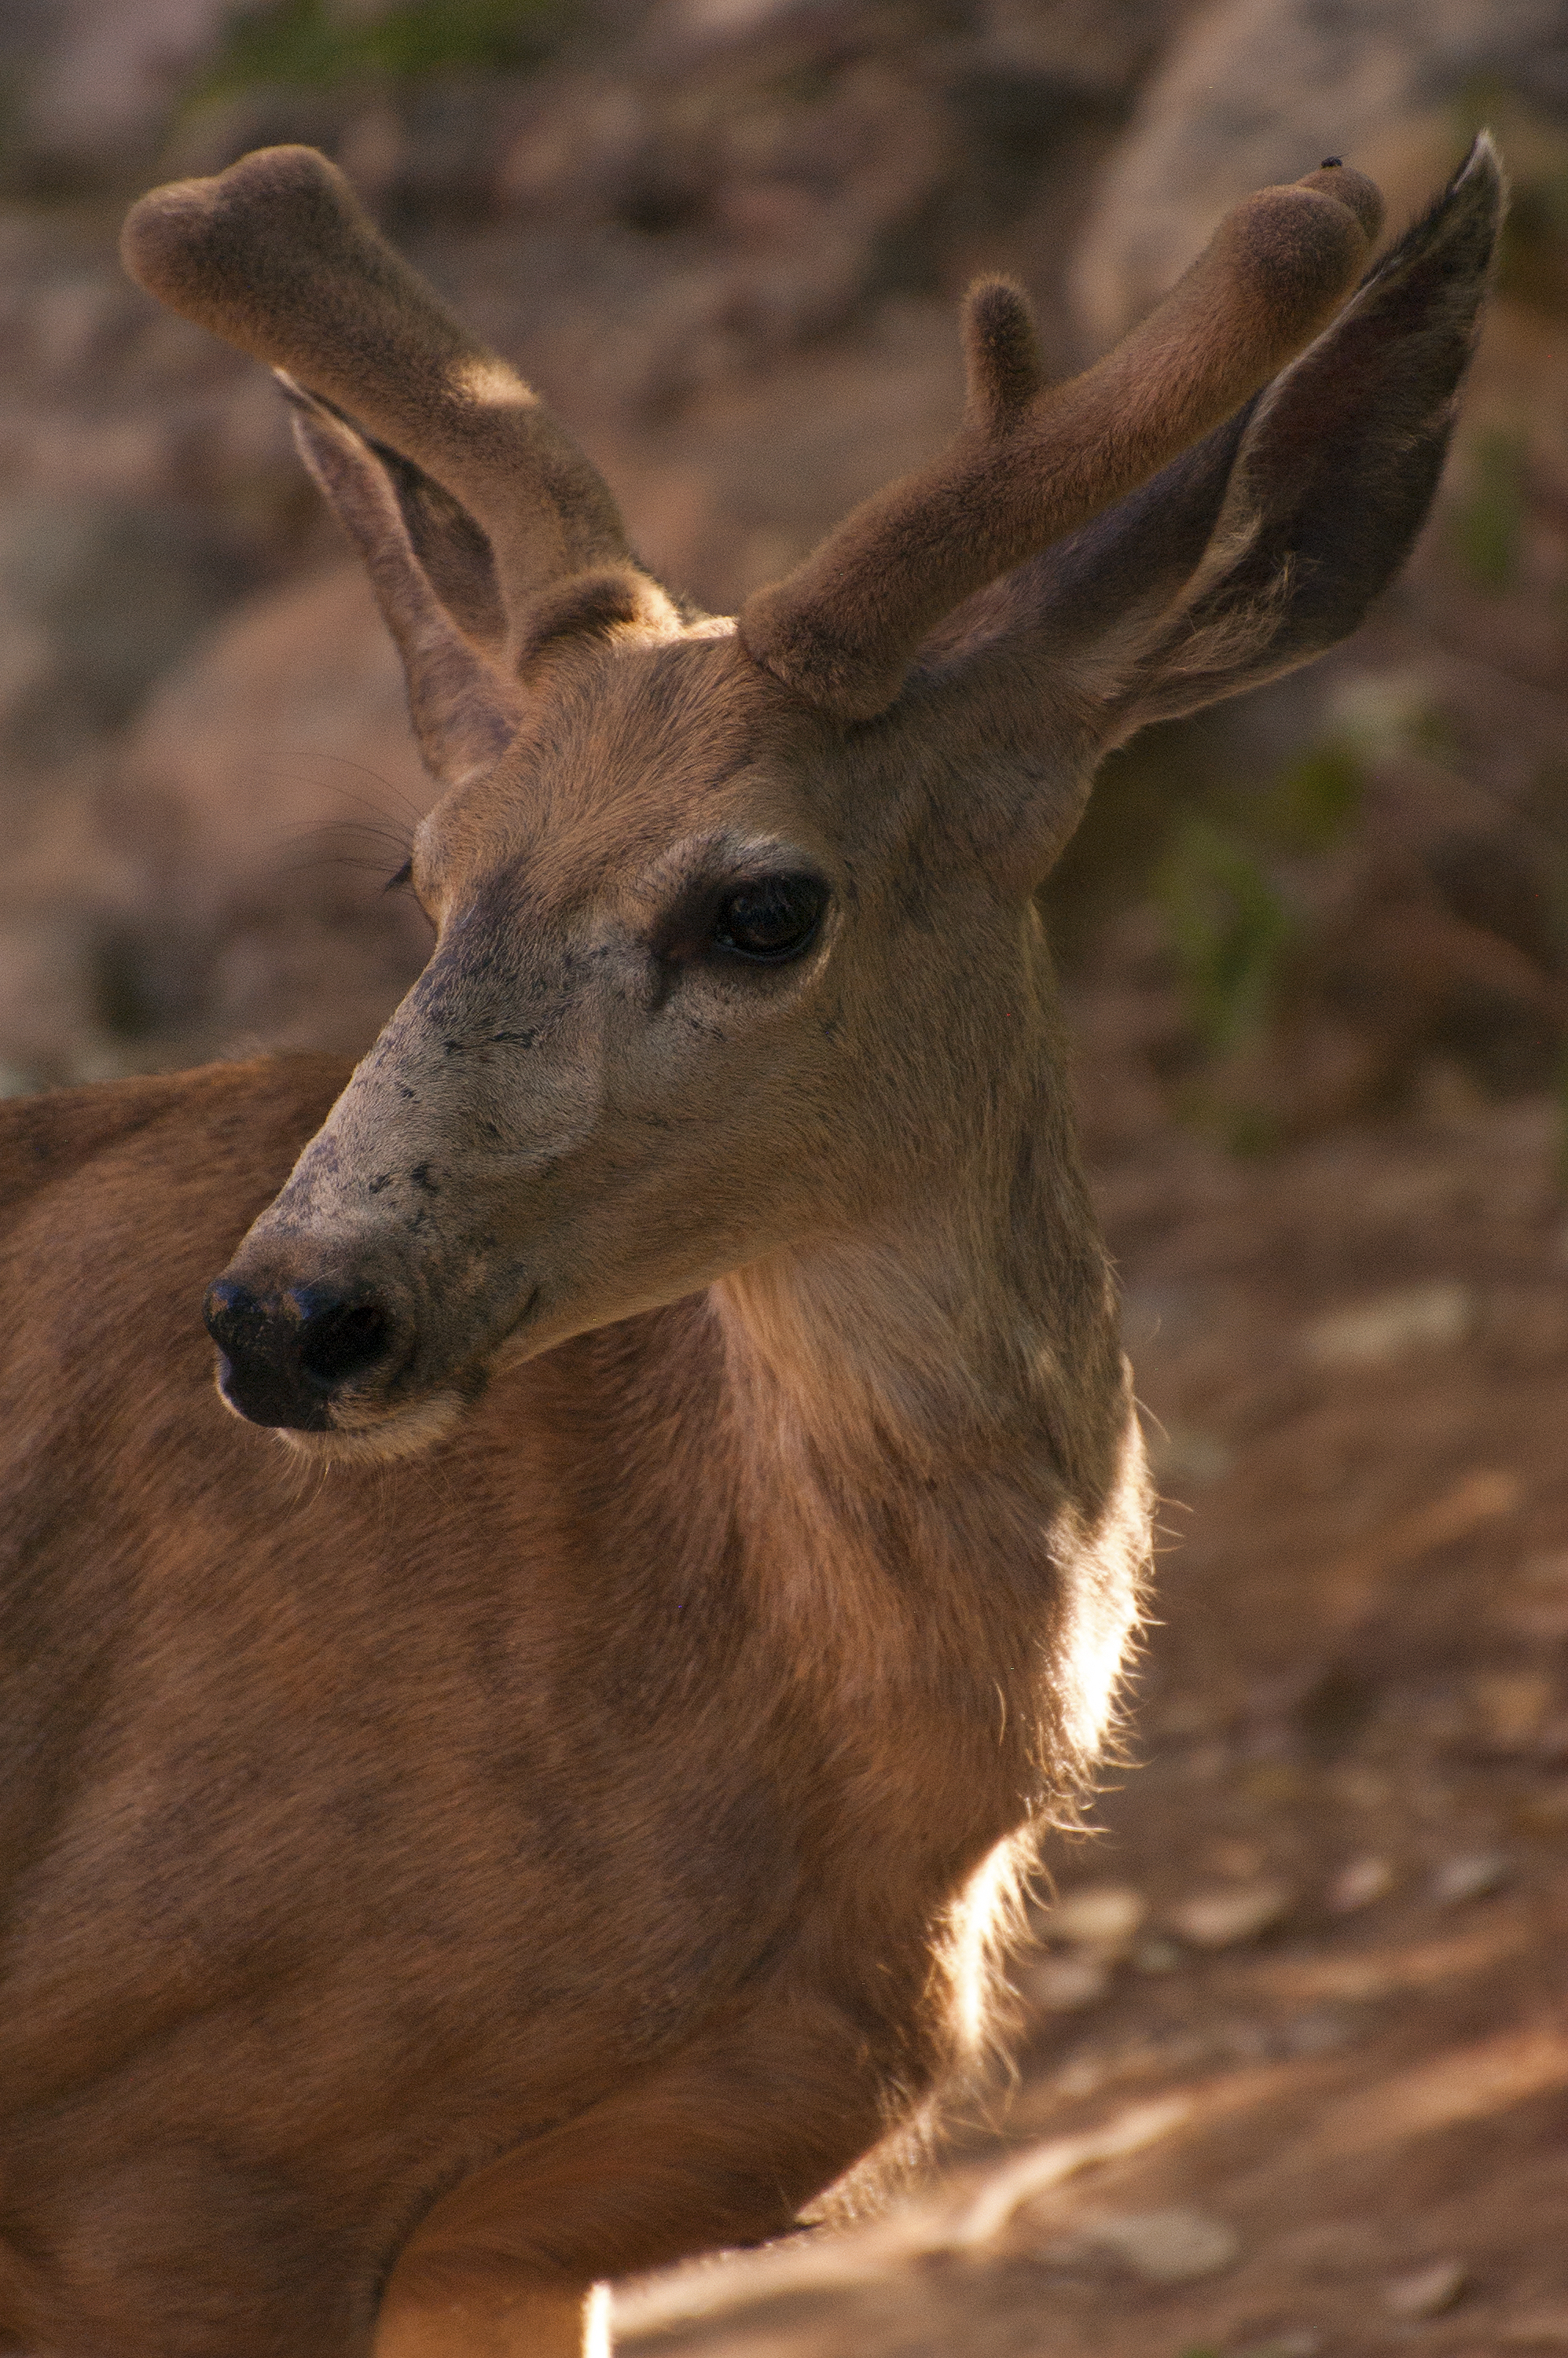 mule deer closeup – Organization of Wildlife Planners